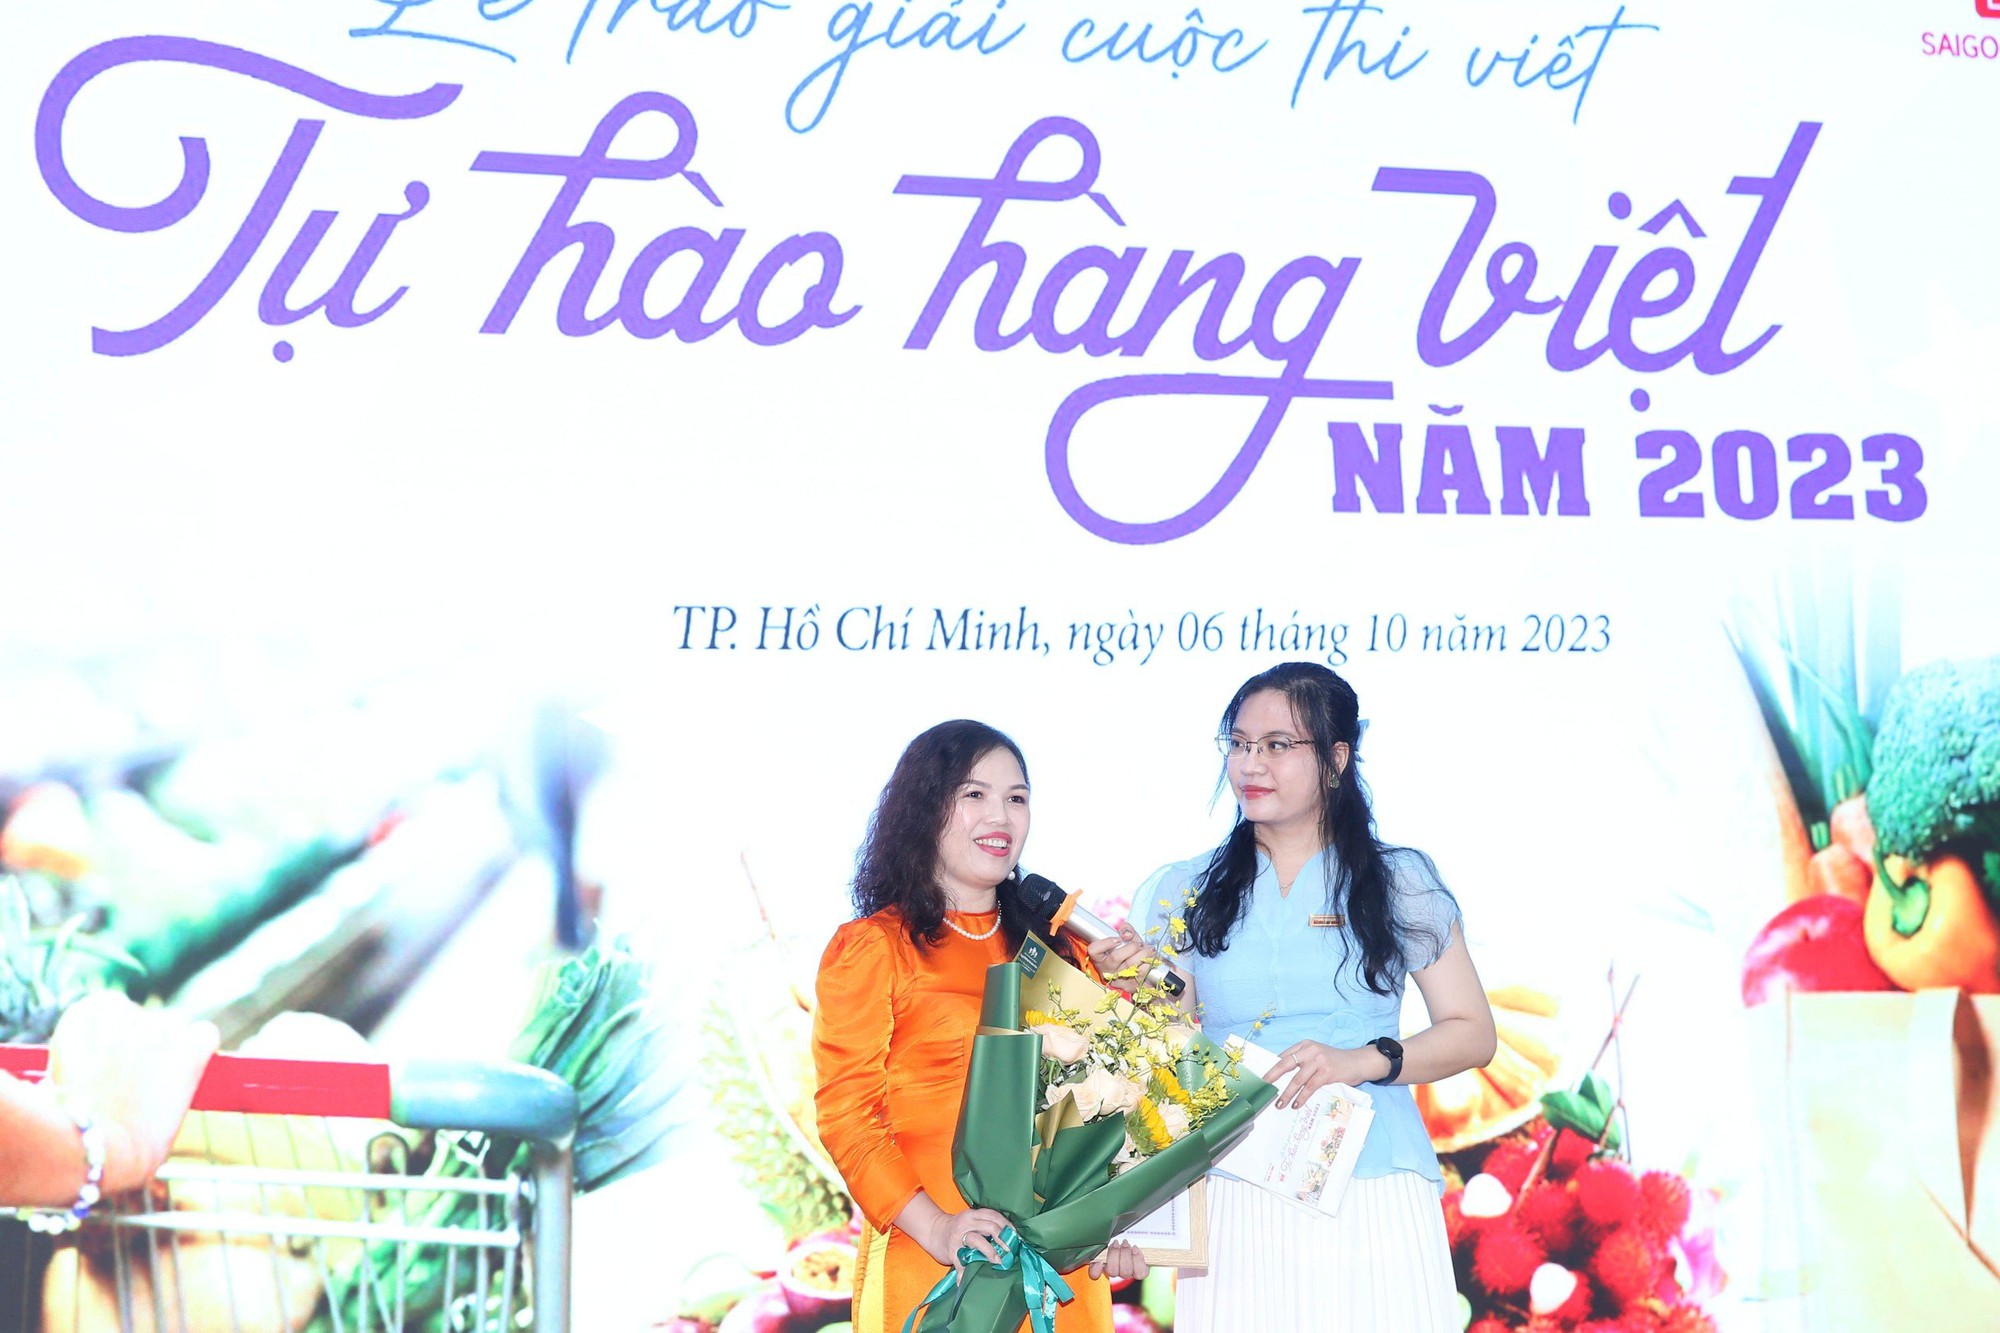 Nhớ lần dìu ngoại đi siêu thị đoạt giải nhất cuộc thi “Tự hào hàng Việt” - Ảnh 4.